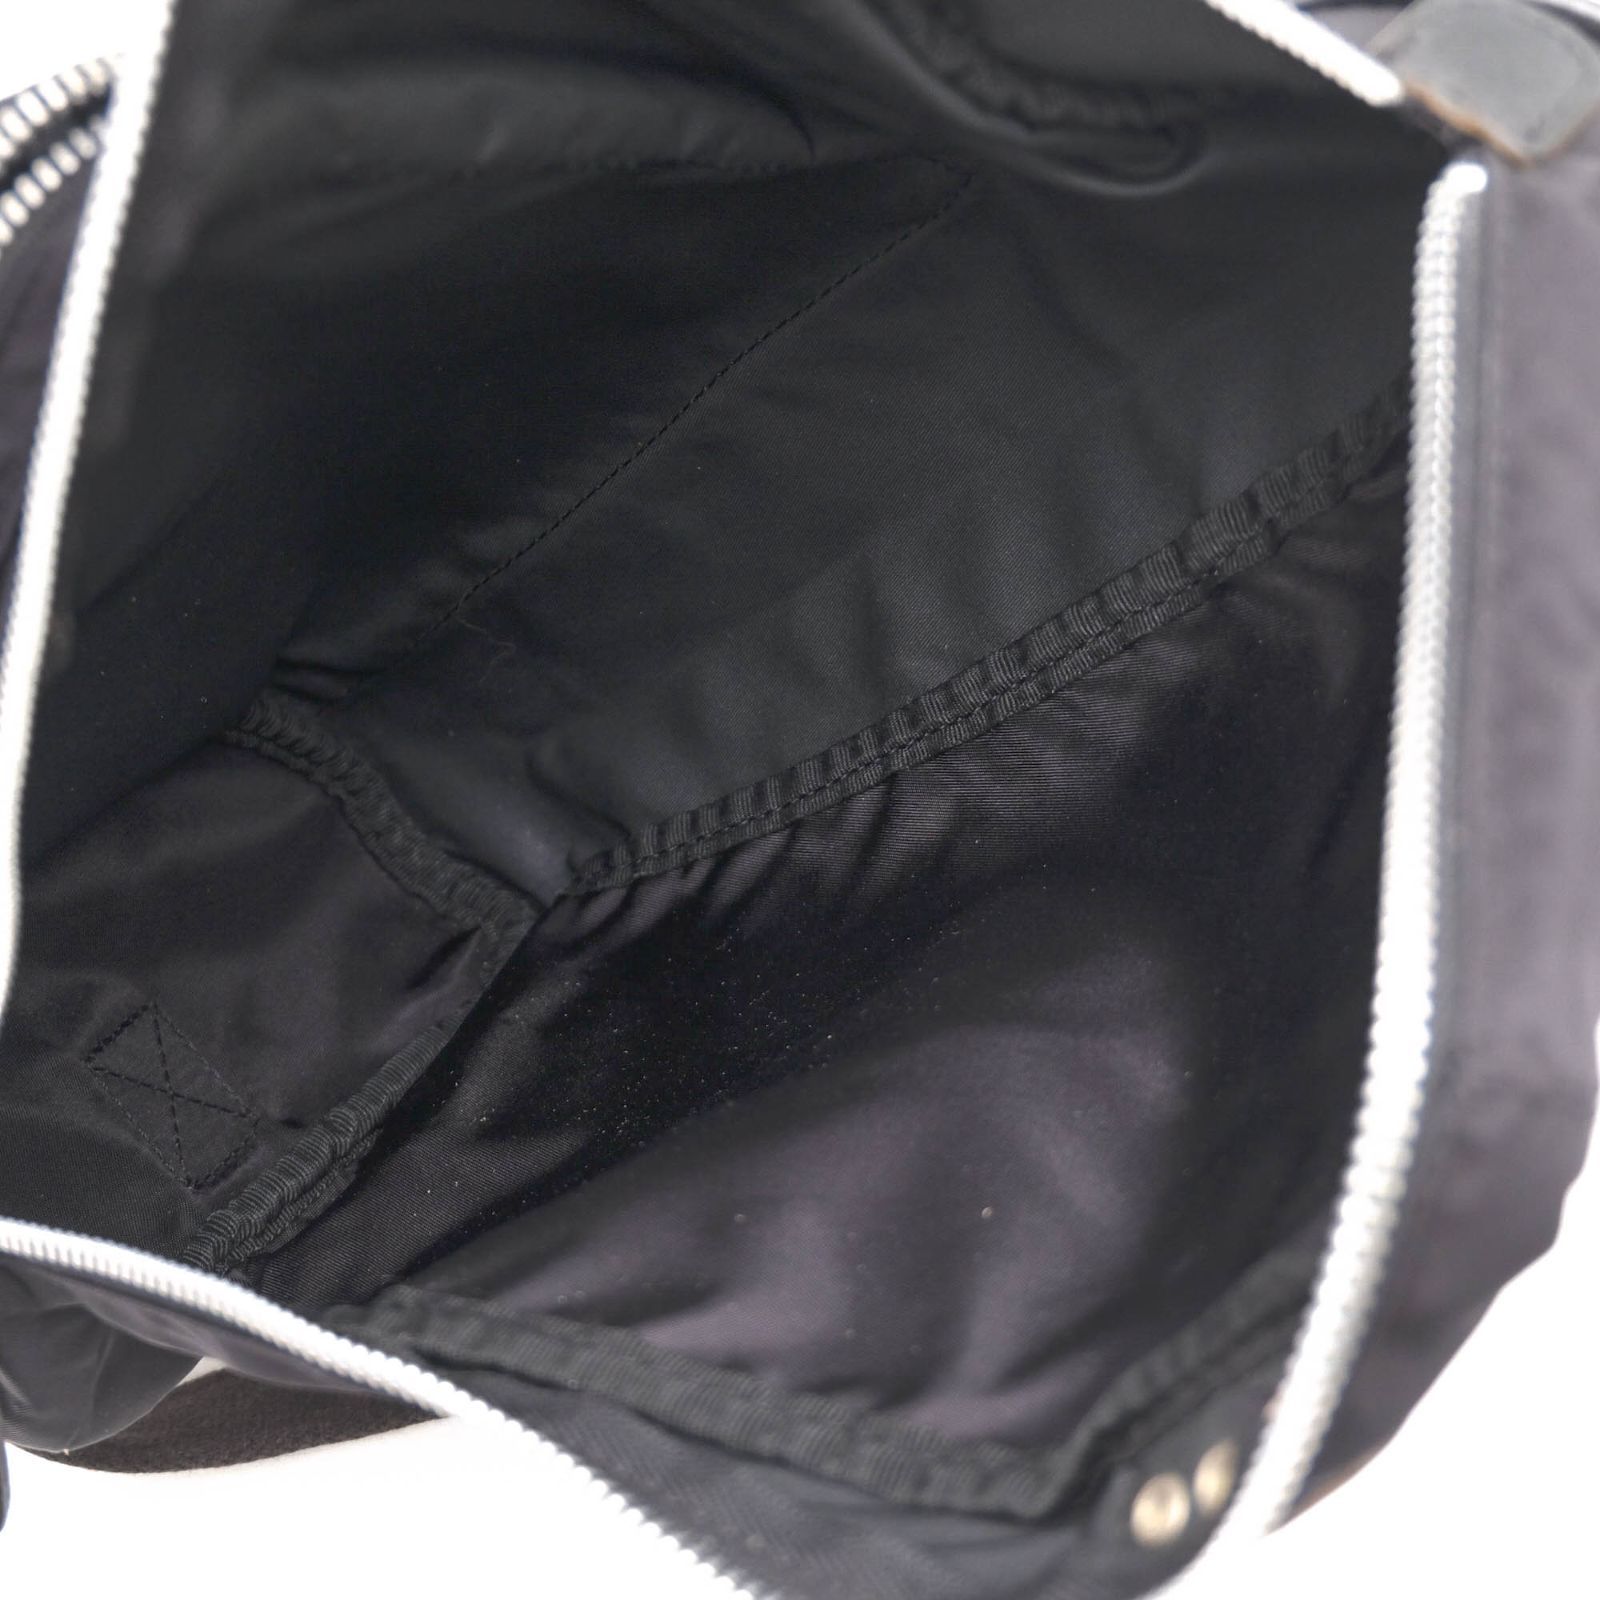 フェリージ／Felisi バッグ ショルダーバッグ 鞄 メンズ 男性 男性用ナイロン レザー 革 本革 ブラック 黒 F99114 ボディバッグ 定番